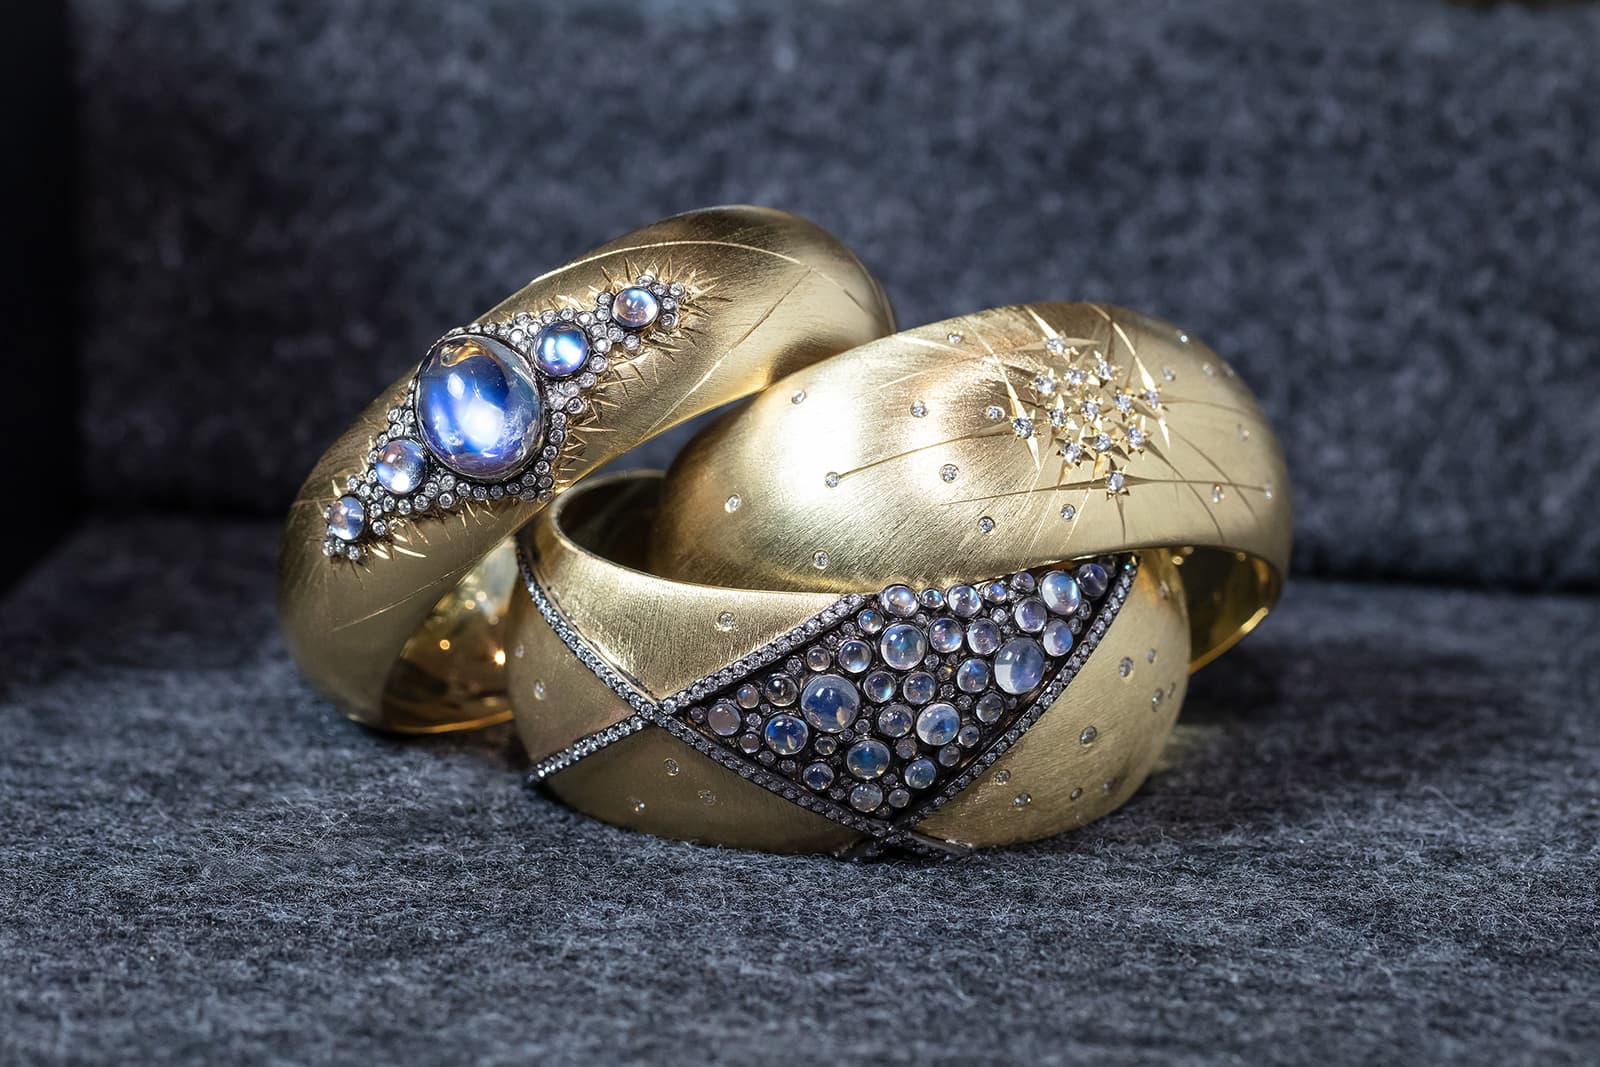 Трио браслетов от Adam Foster из коллекции Constellation с бриллиантами и лунными камнями